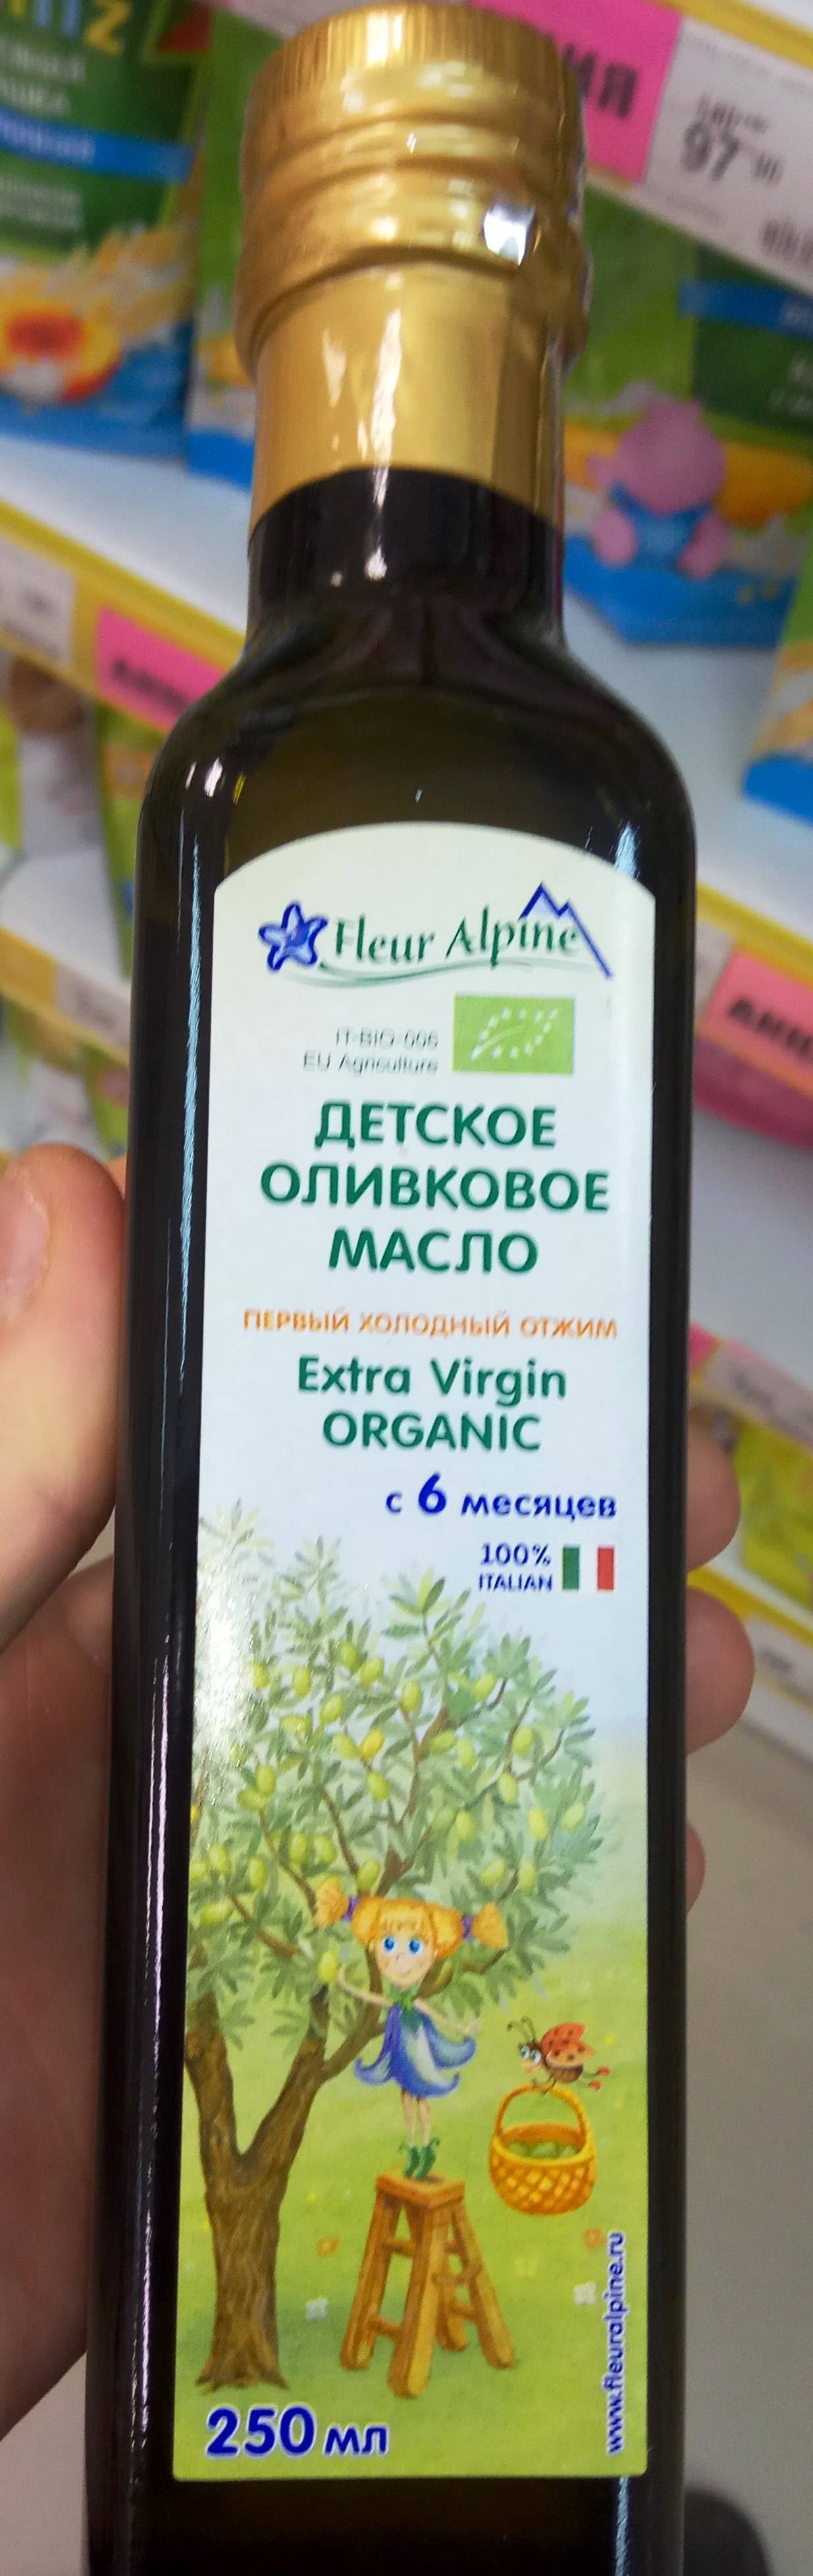 С чего начинать прикармливать аллергика? - с чего начать прикорм младенцу аллергику - запись пользователя анна (zolotula) в сообществе питание новорожденного в категории пищевая аллергия - babyblog.ru